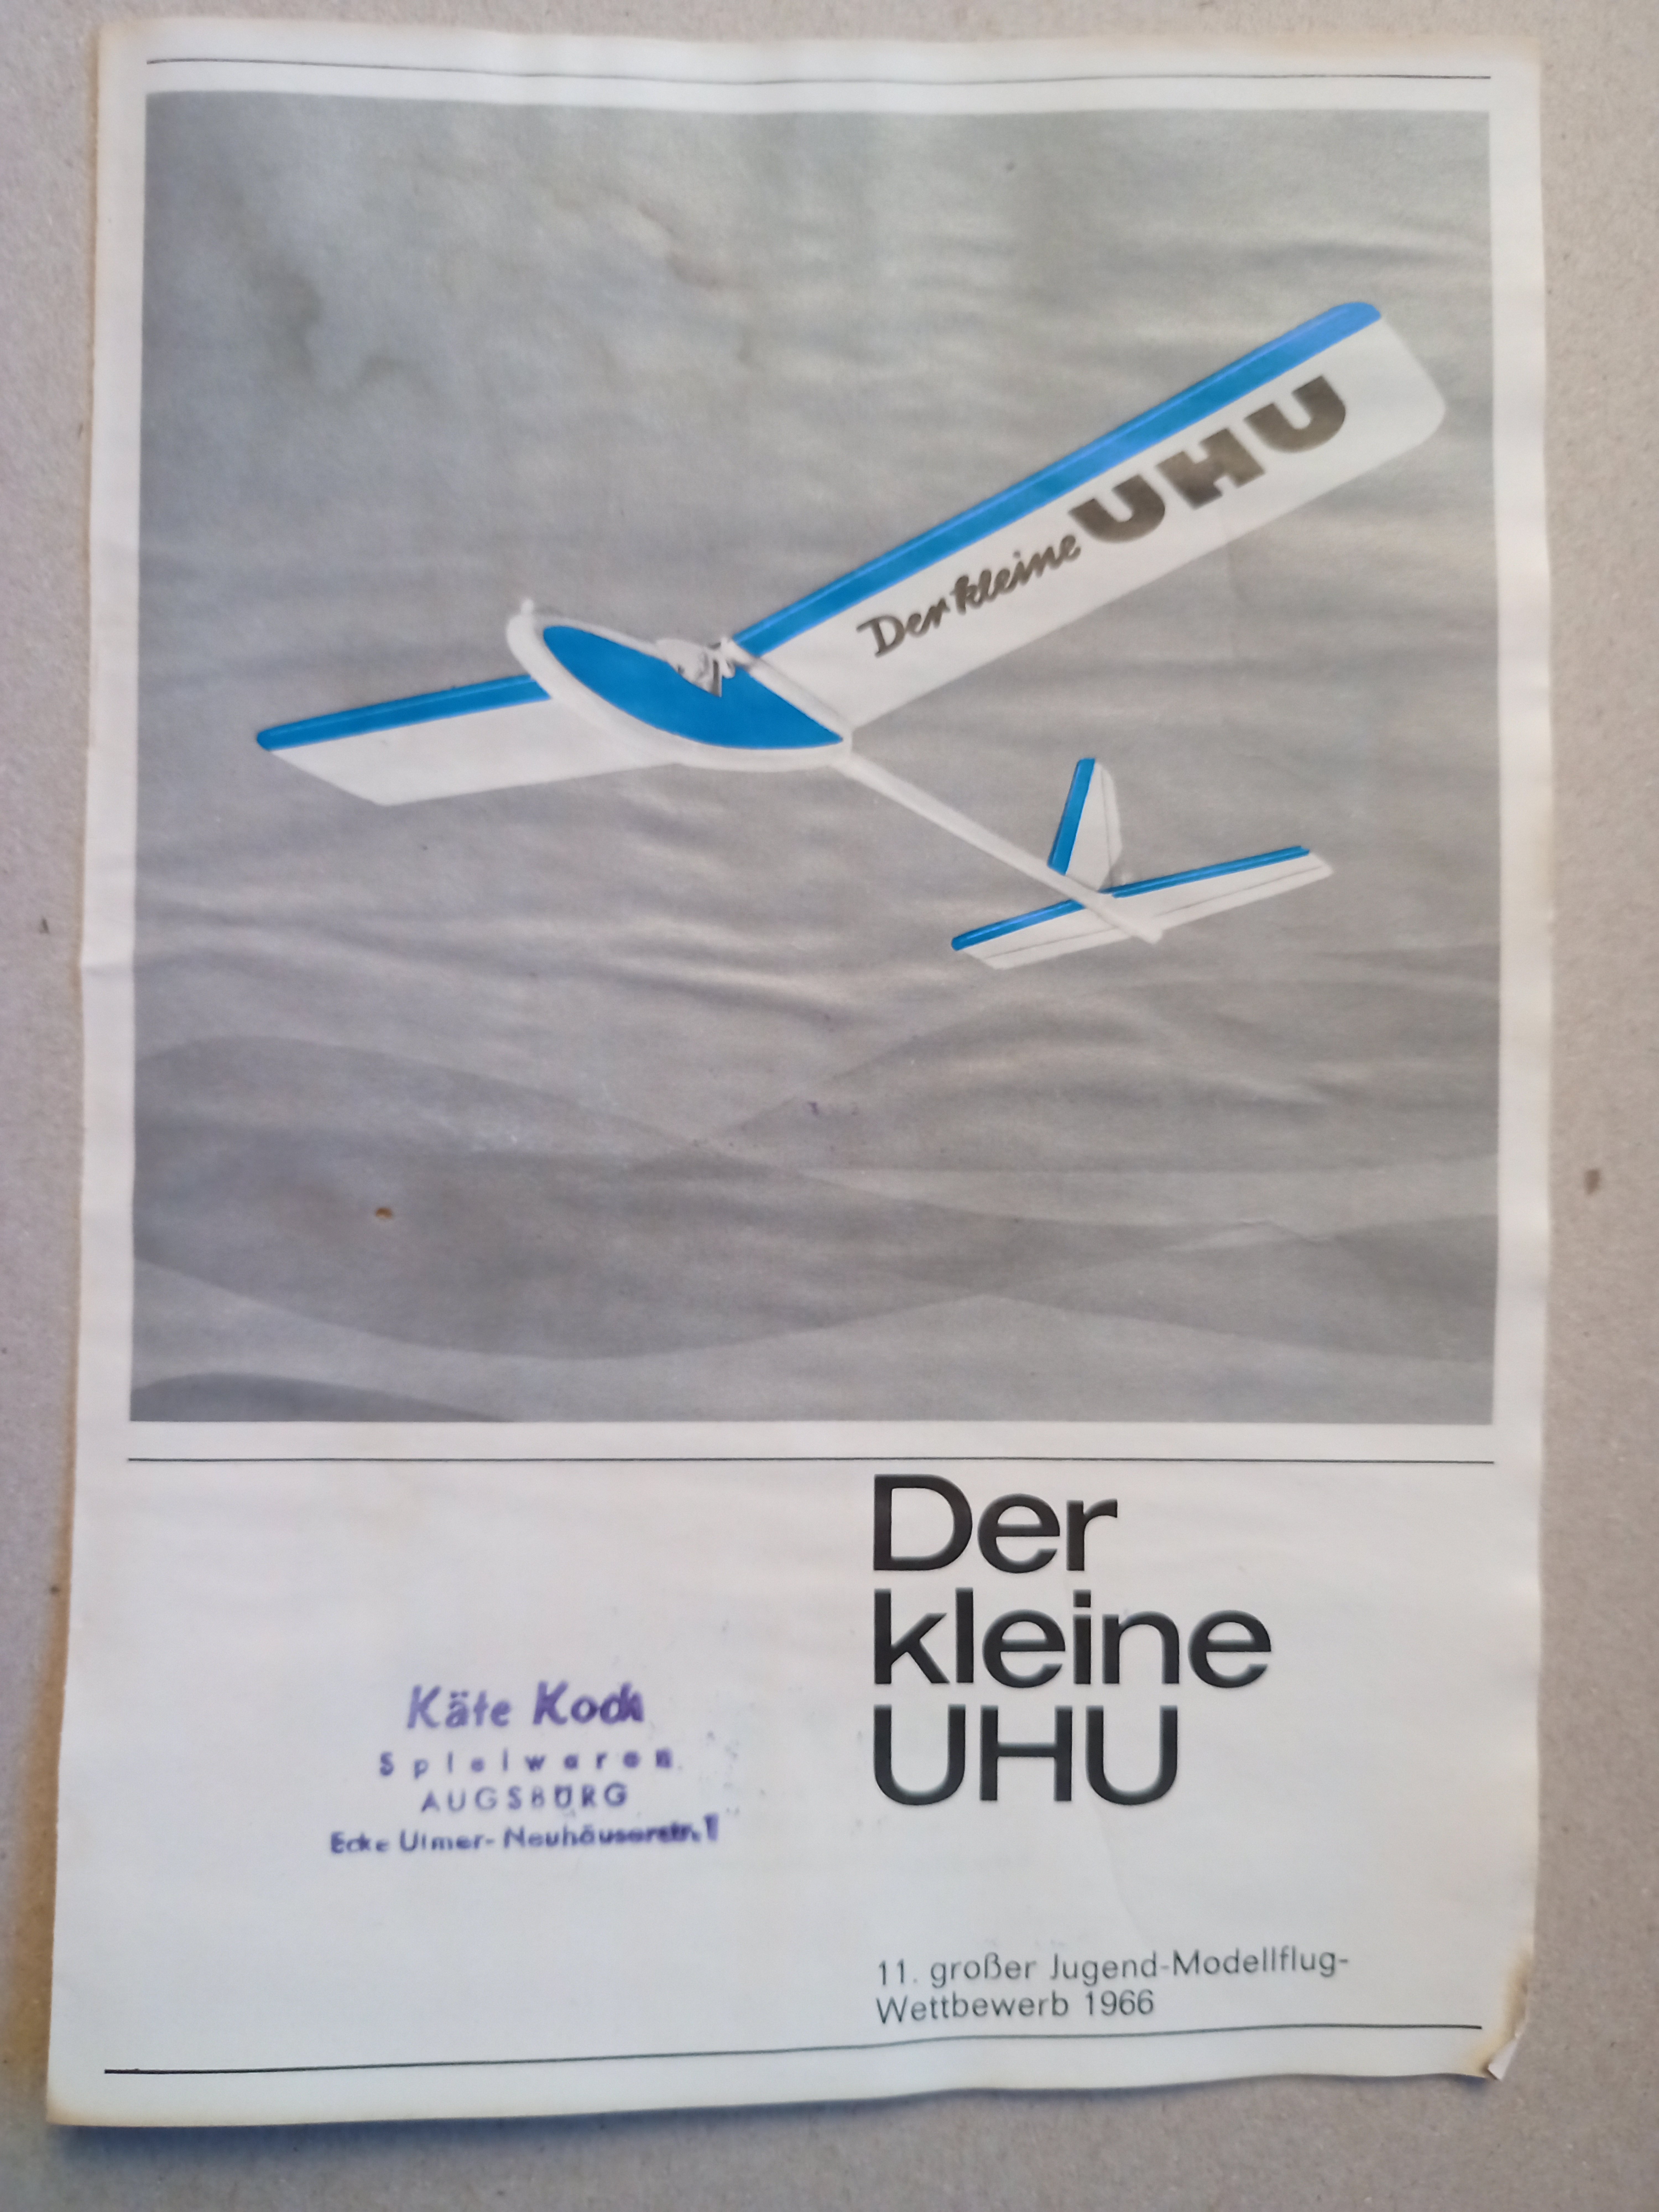 Graupner Flyer der kleine UHU (Deutsches Segelflugmuseum mit Modellflug CC BY-NC-SA)